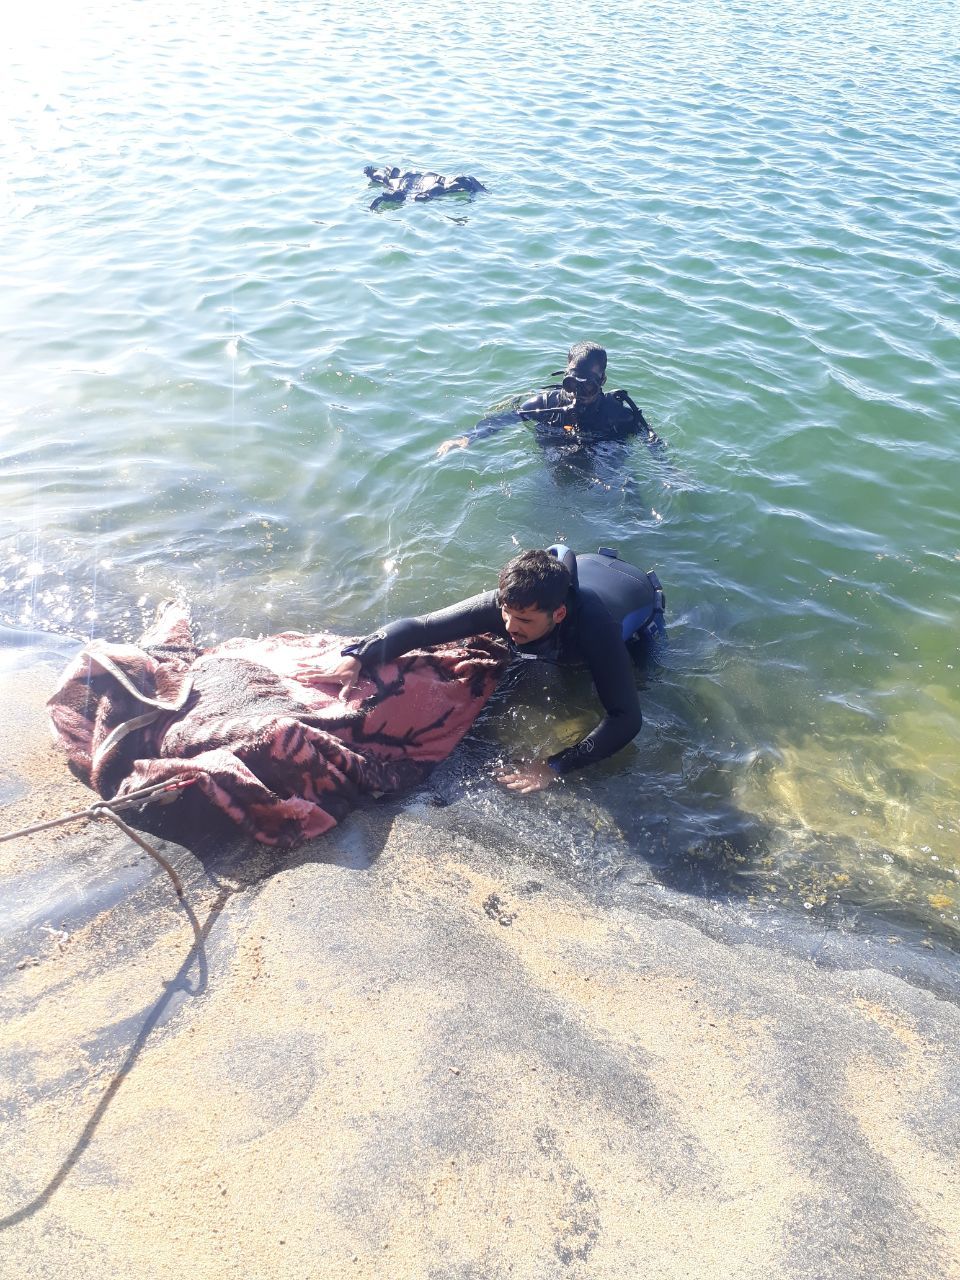 ۲نفر در سد خاکی شهرستان آوج غرق شدند+تصاویر | پایگاه خبری صبح قزوین